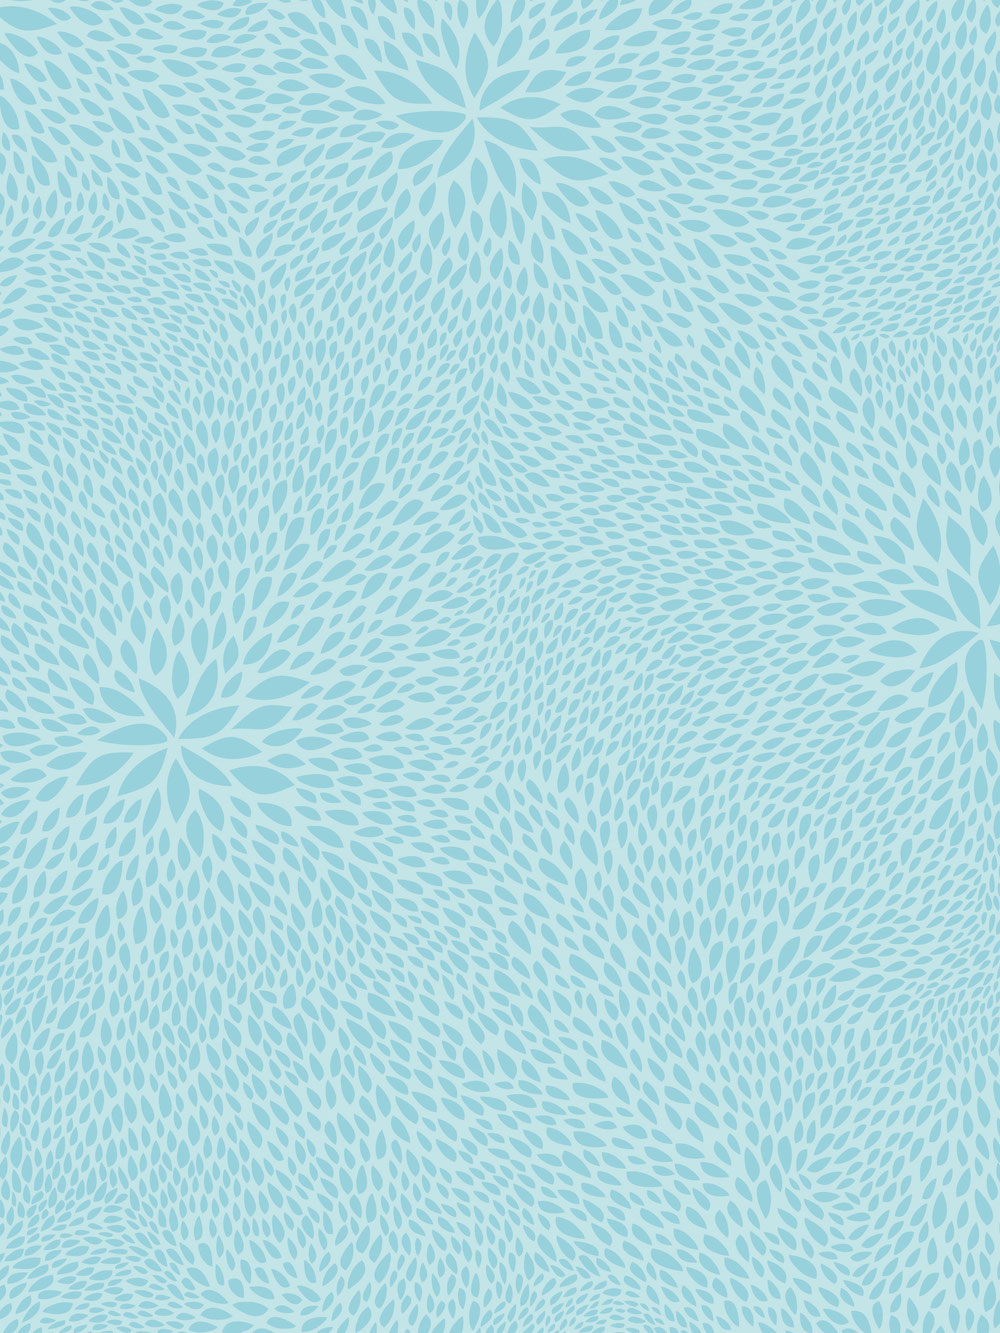 Décopatch-Papier 701 Muster Blütenblätter hellblau, 30 x 40 cm